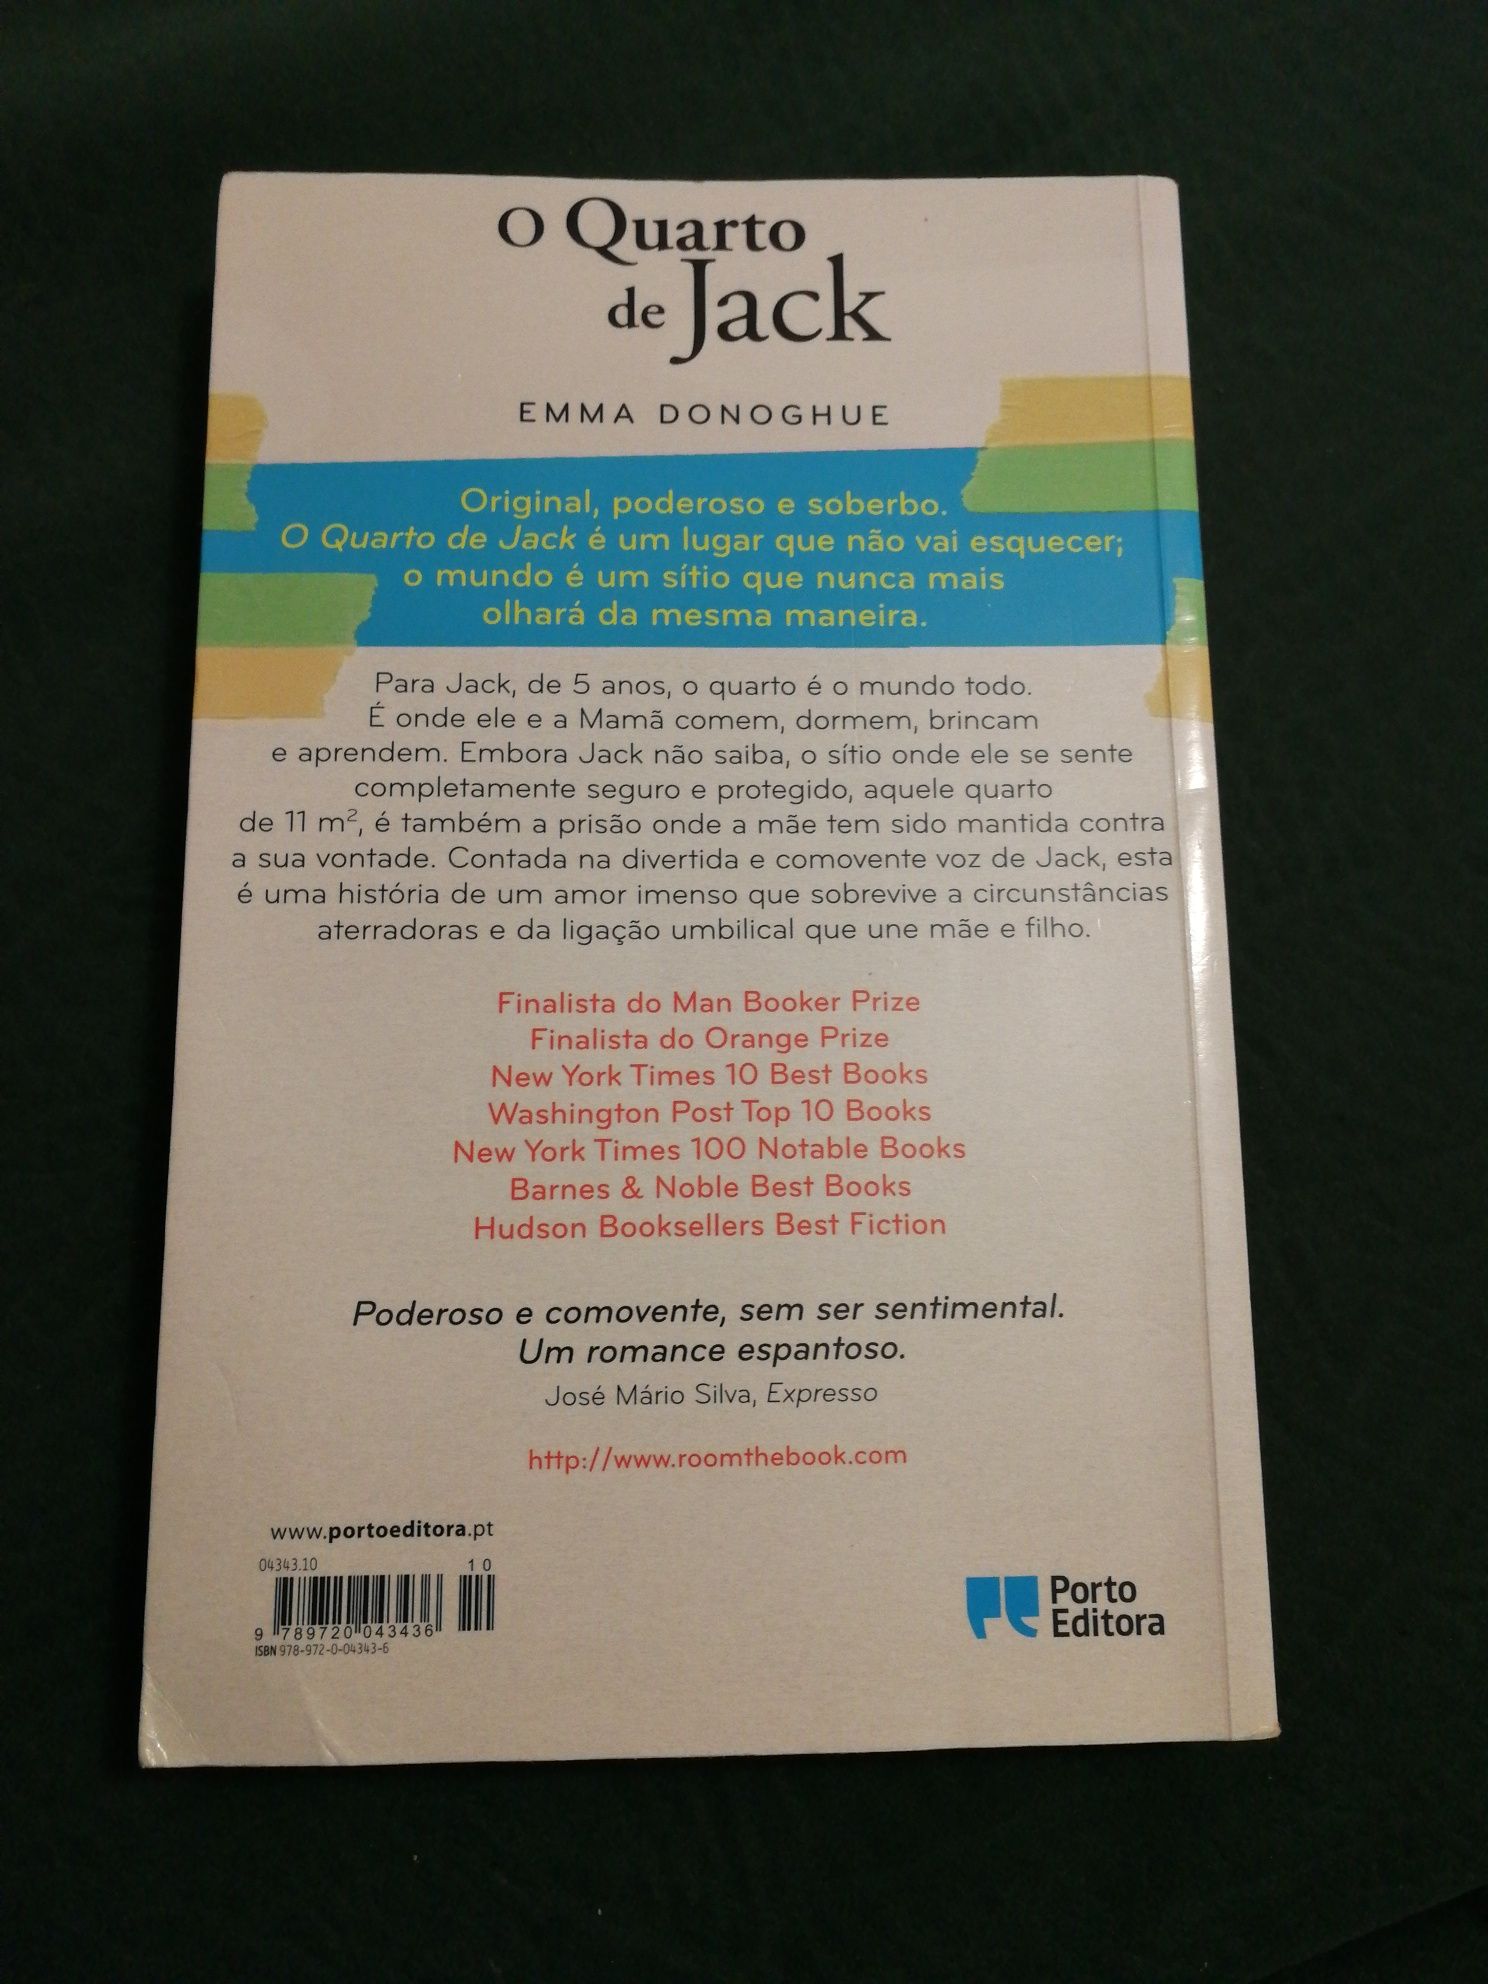 Livro "O Quarto de Jack" de Emma Donoghue